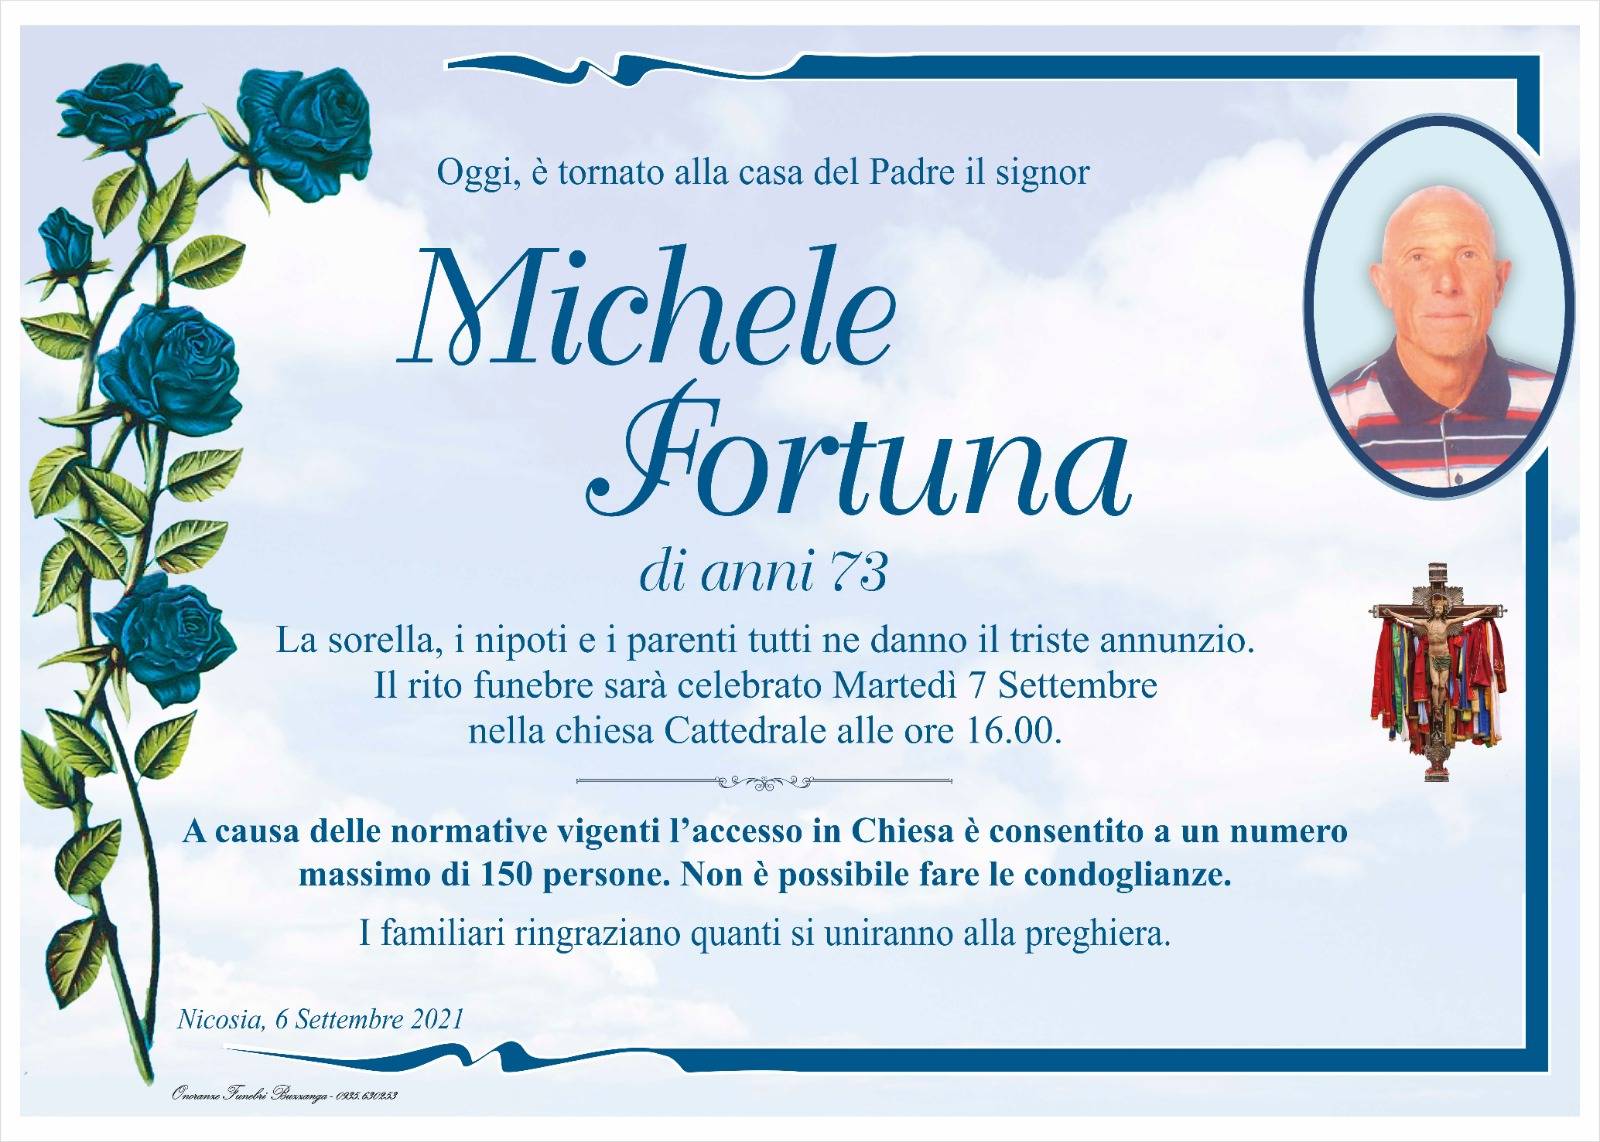 Michele Fortuna